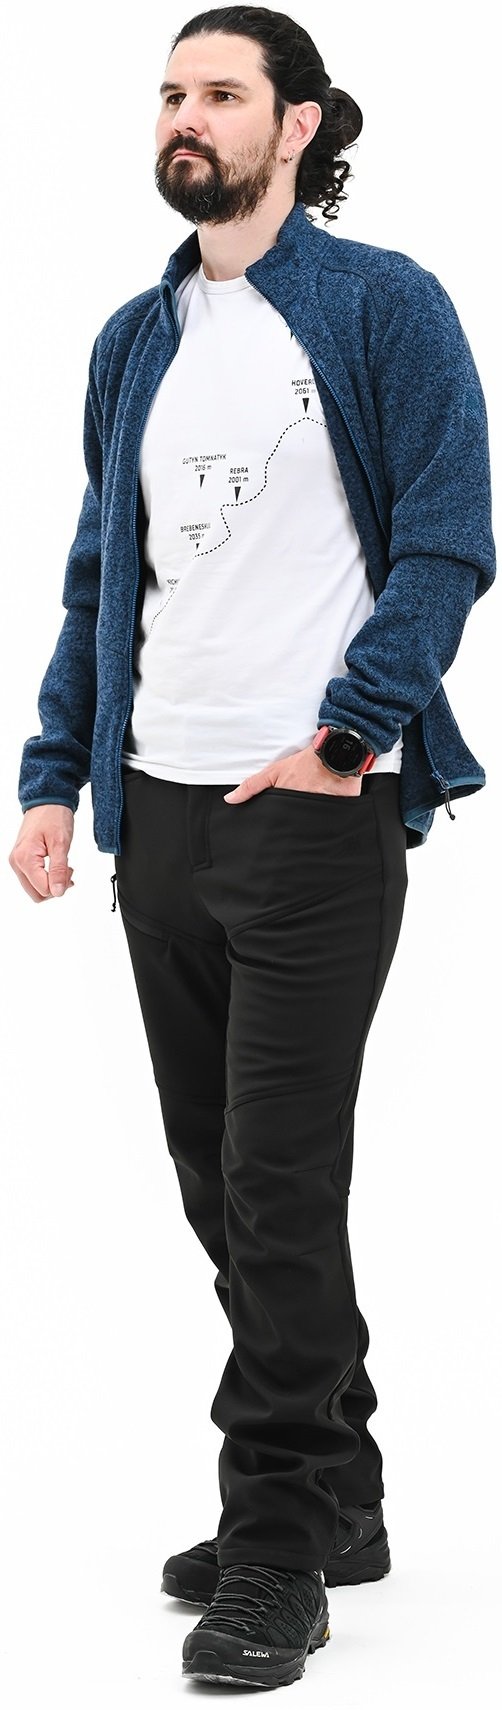 Чоловічі штани Turbat Polaris Mns black XL чорнийфото4